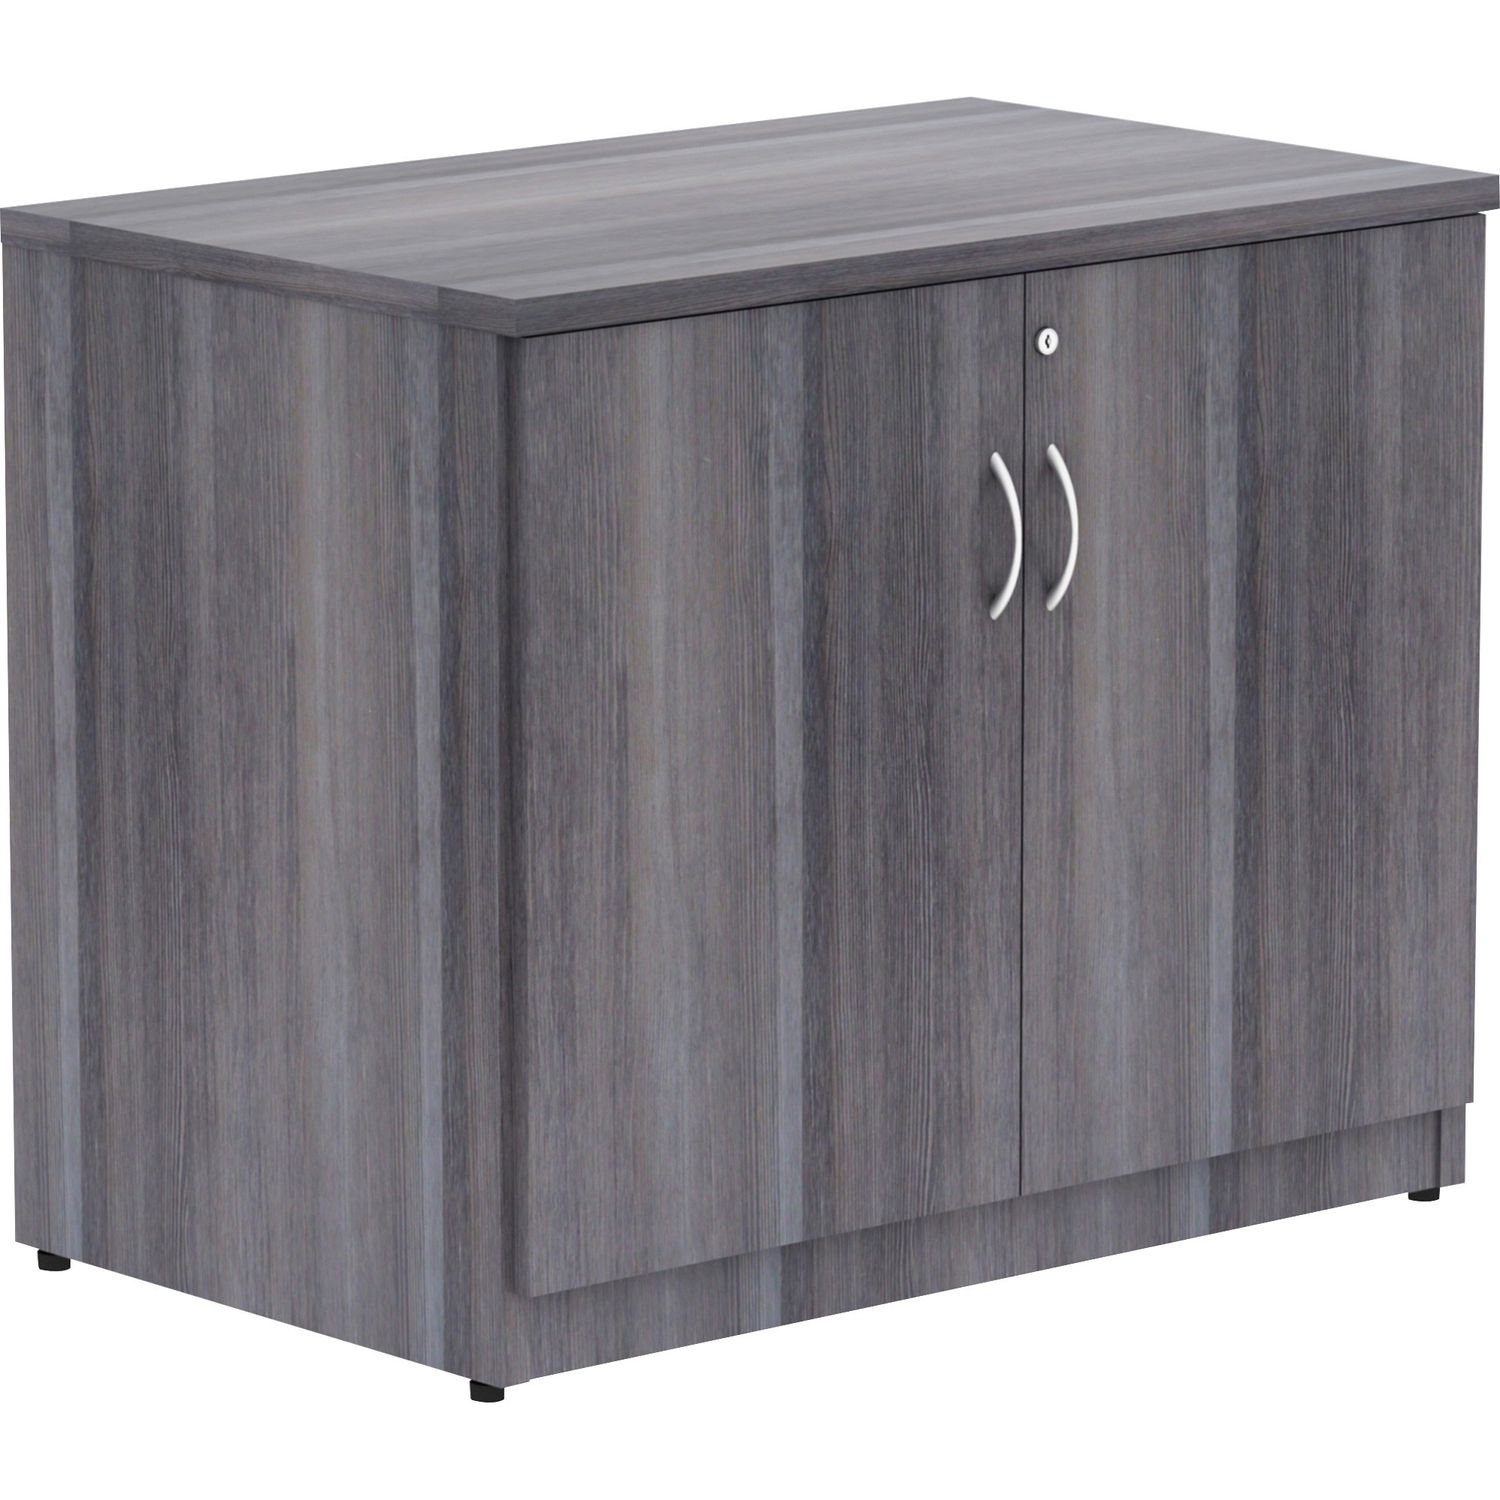 Essentials 2-door Storage Cabinet 36" x 22.5" x 29.5", Drawer(s)2 Door(s)